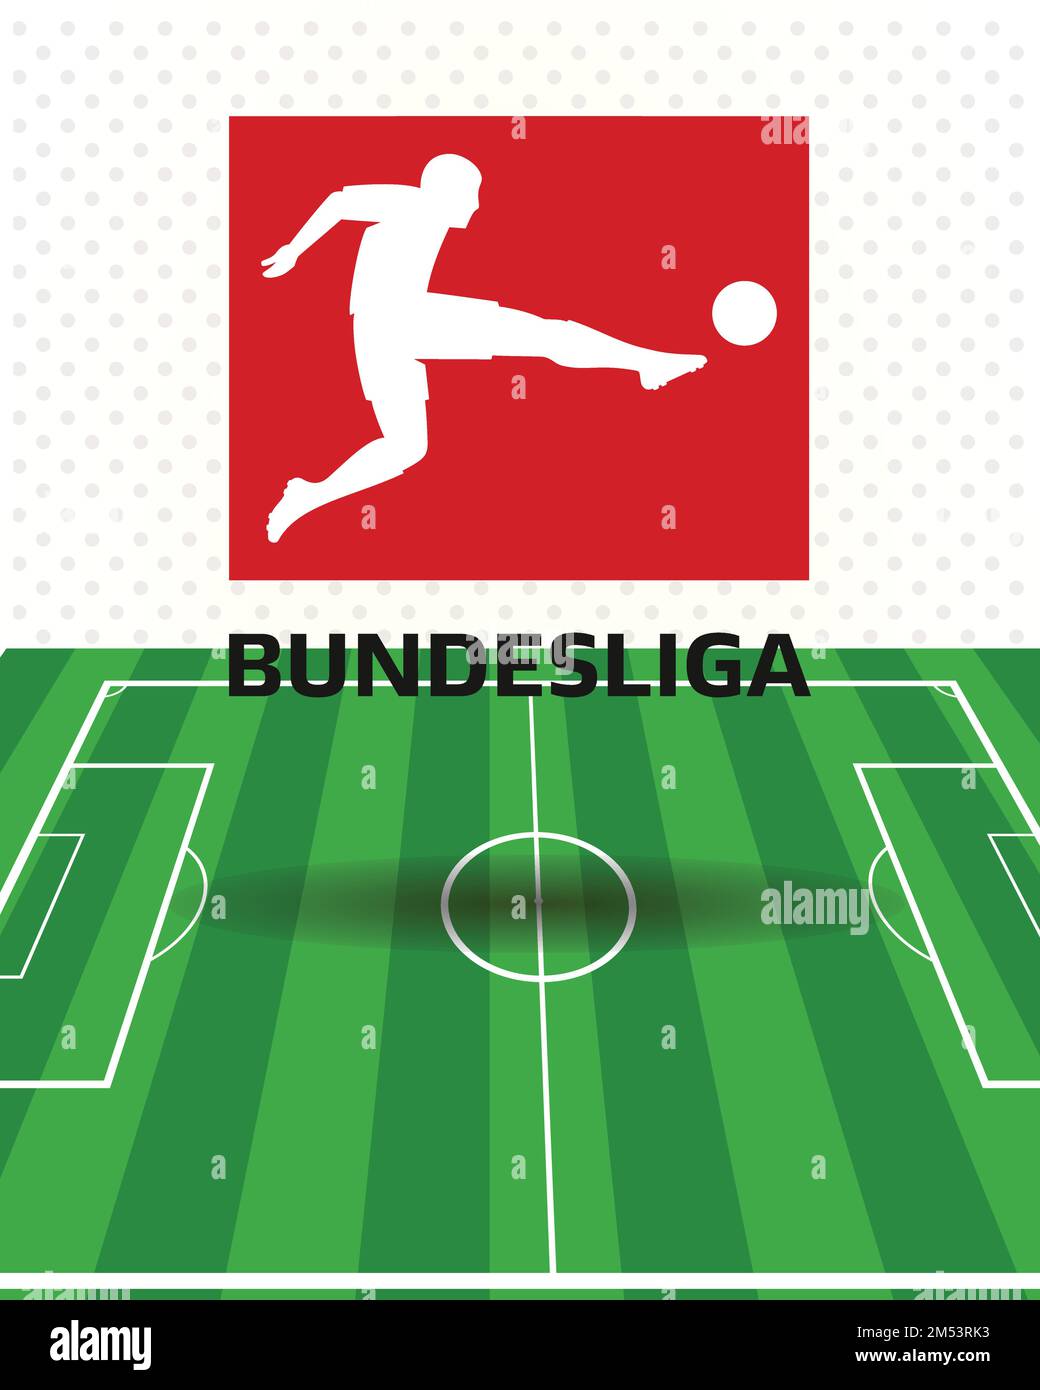 Bundesliga logo top professionnel Allemagne système de ligue de football : Colombo, Sri Lanka – 26 décembre 2022 Illustration de Vecteur